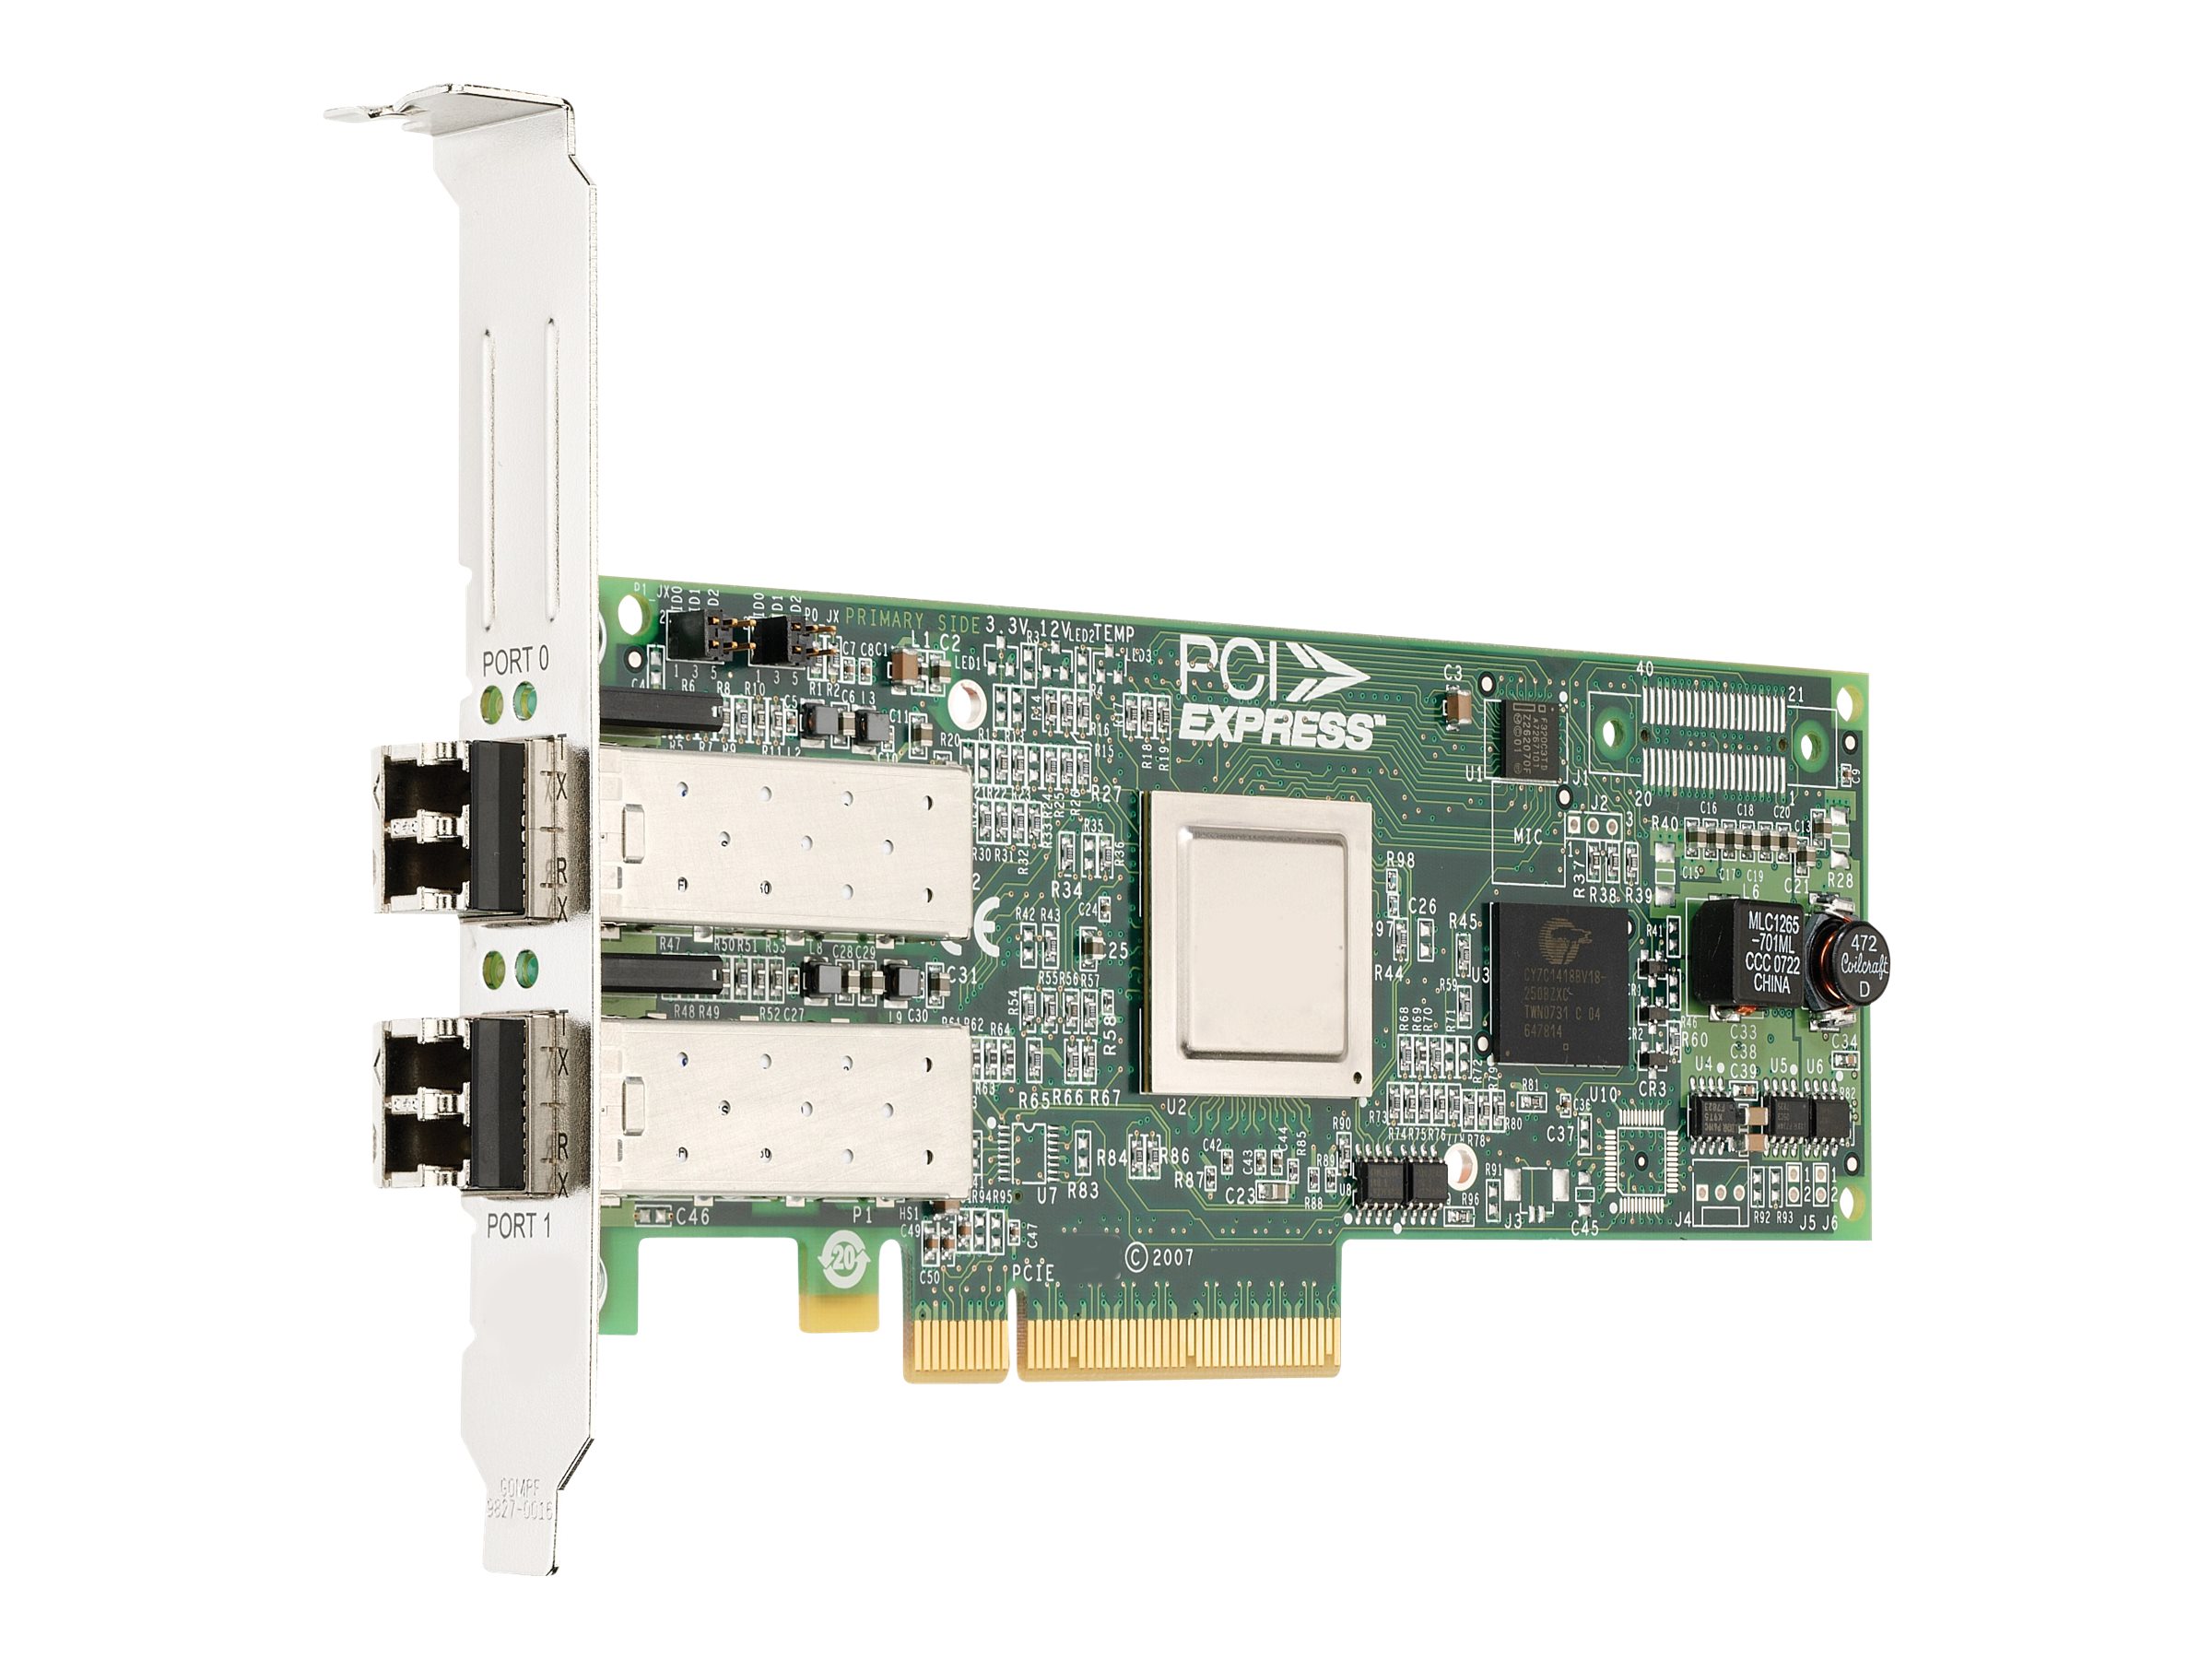 Emulex LPe12002-M8 8GFC, dual-port HBA - Hostbus-Adapter - PCIe 2.0 - 8Gb Fibre Channel x 2